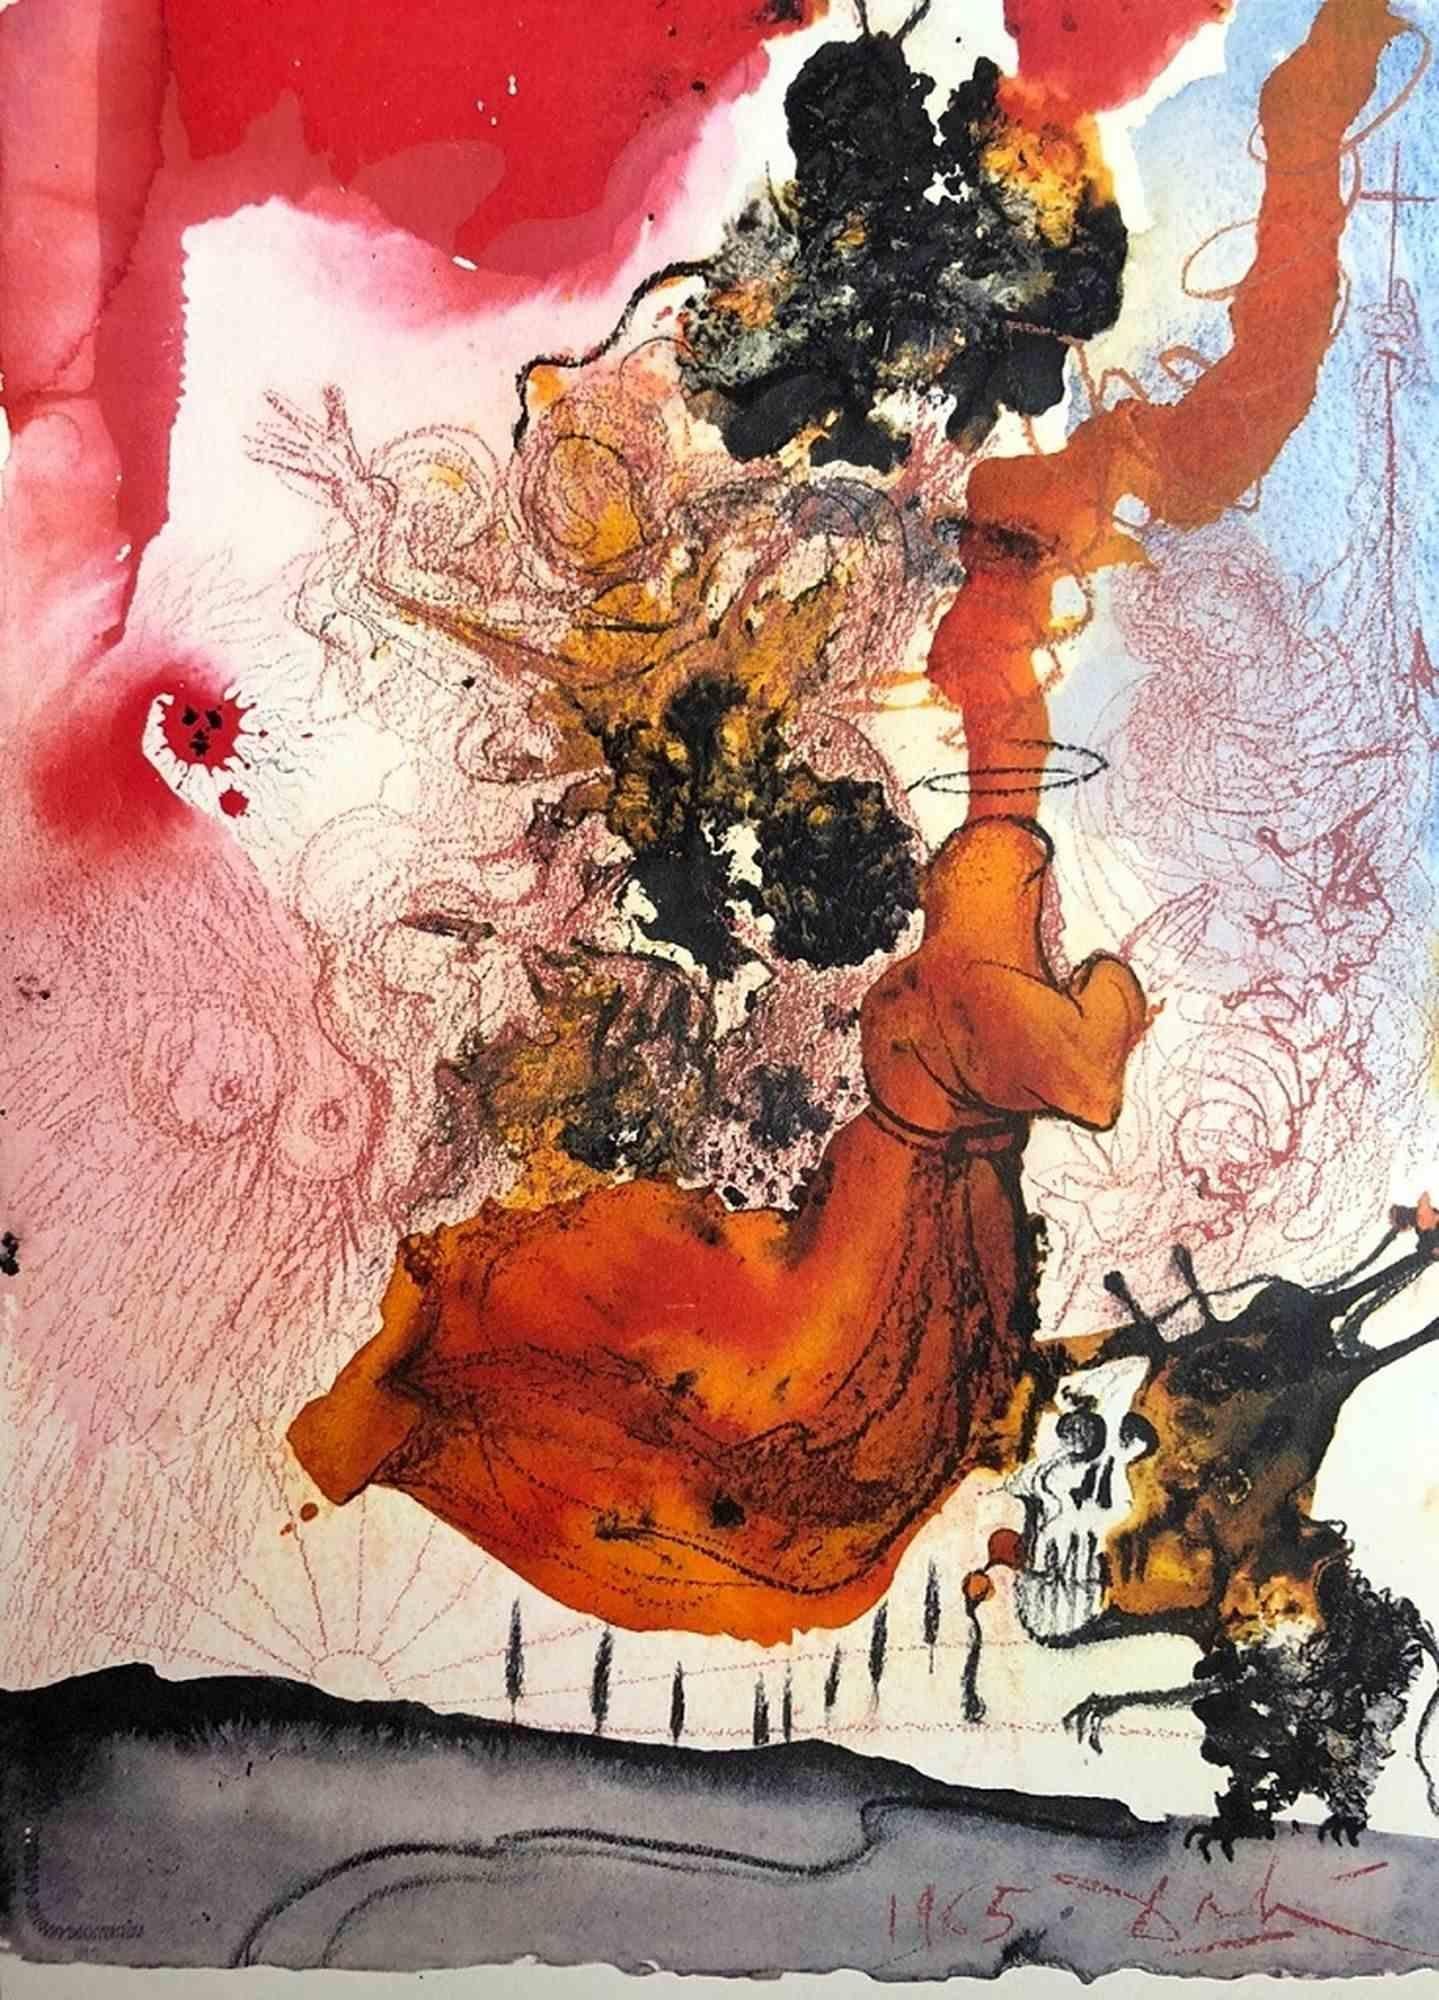 Salvador Dalí Abstract Print - Cadaver in Sepulchro Elisei  - Lithograph  - 1960s